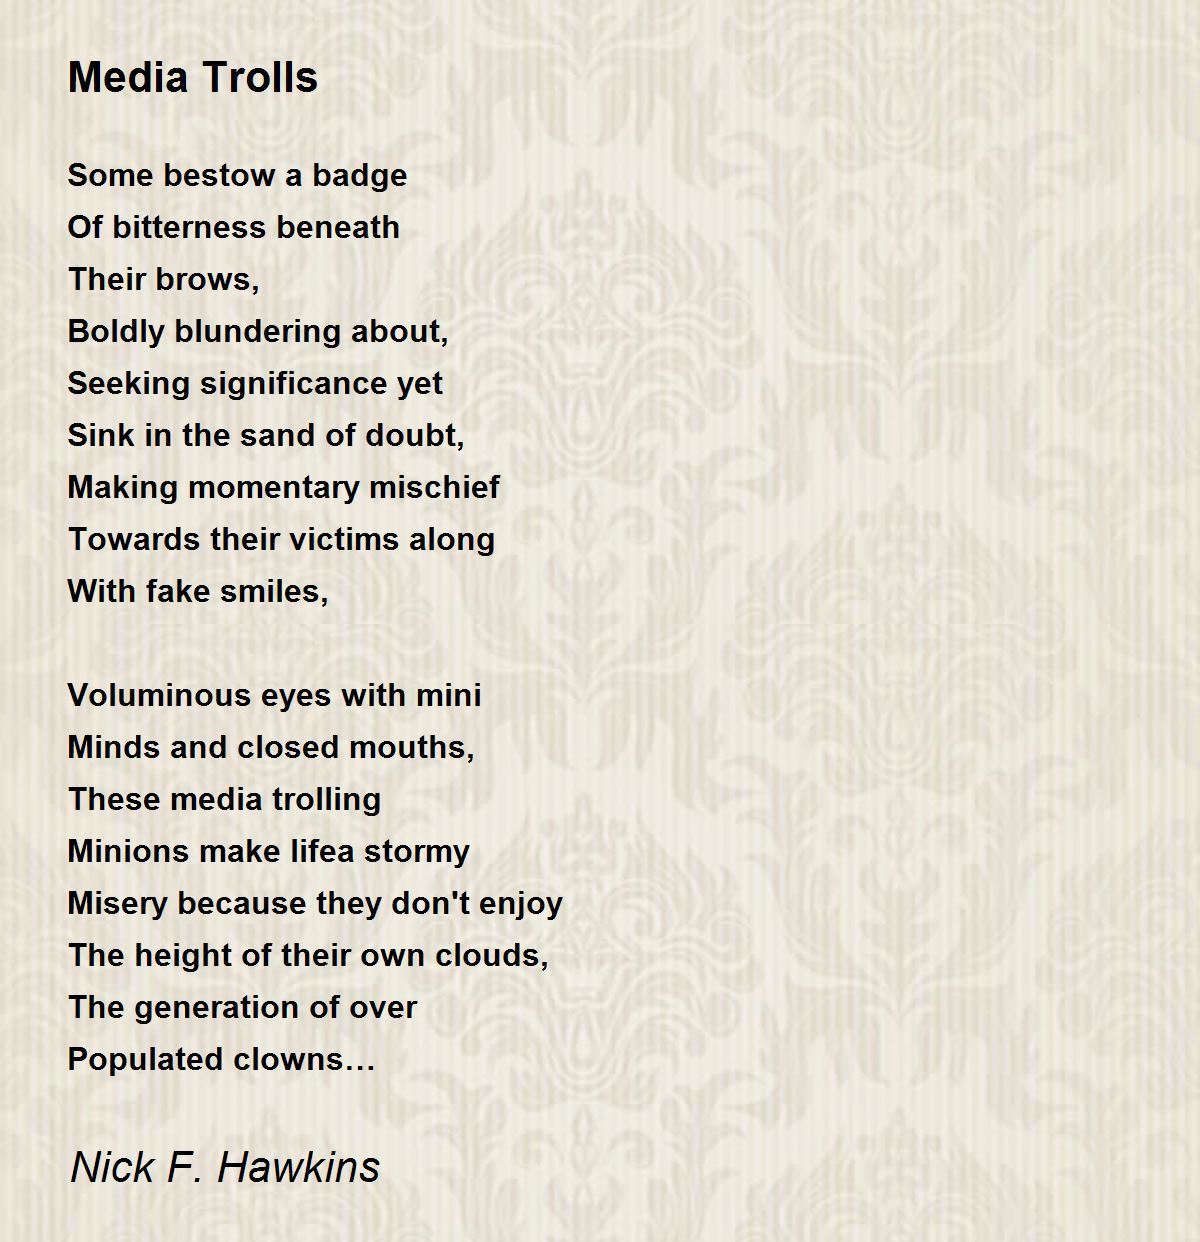 Media Trolls - Media Trolls Poem by Nick F. Hawkins